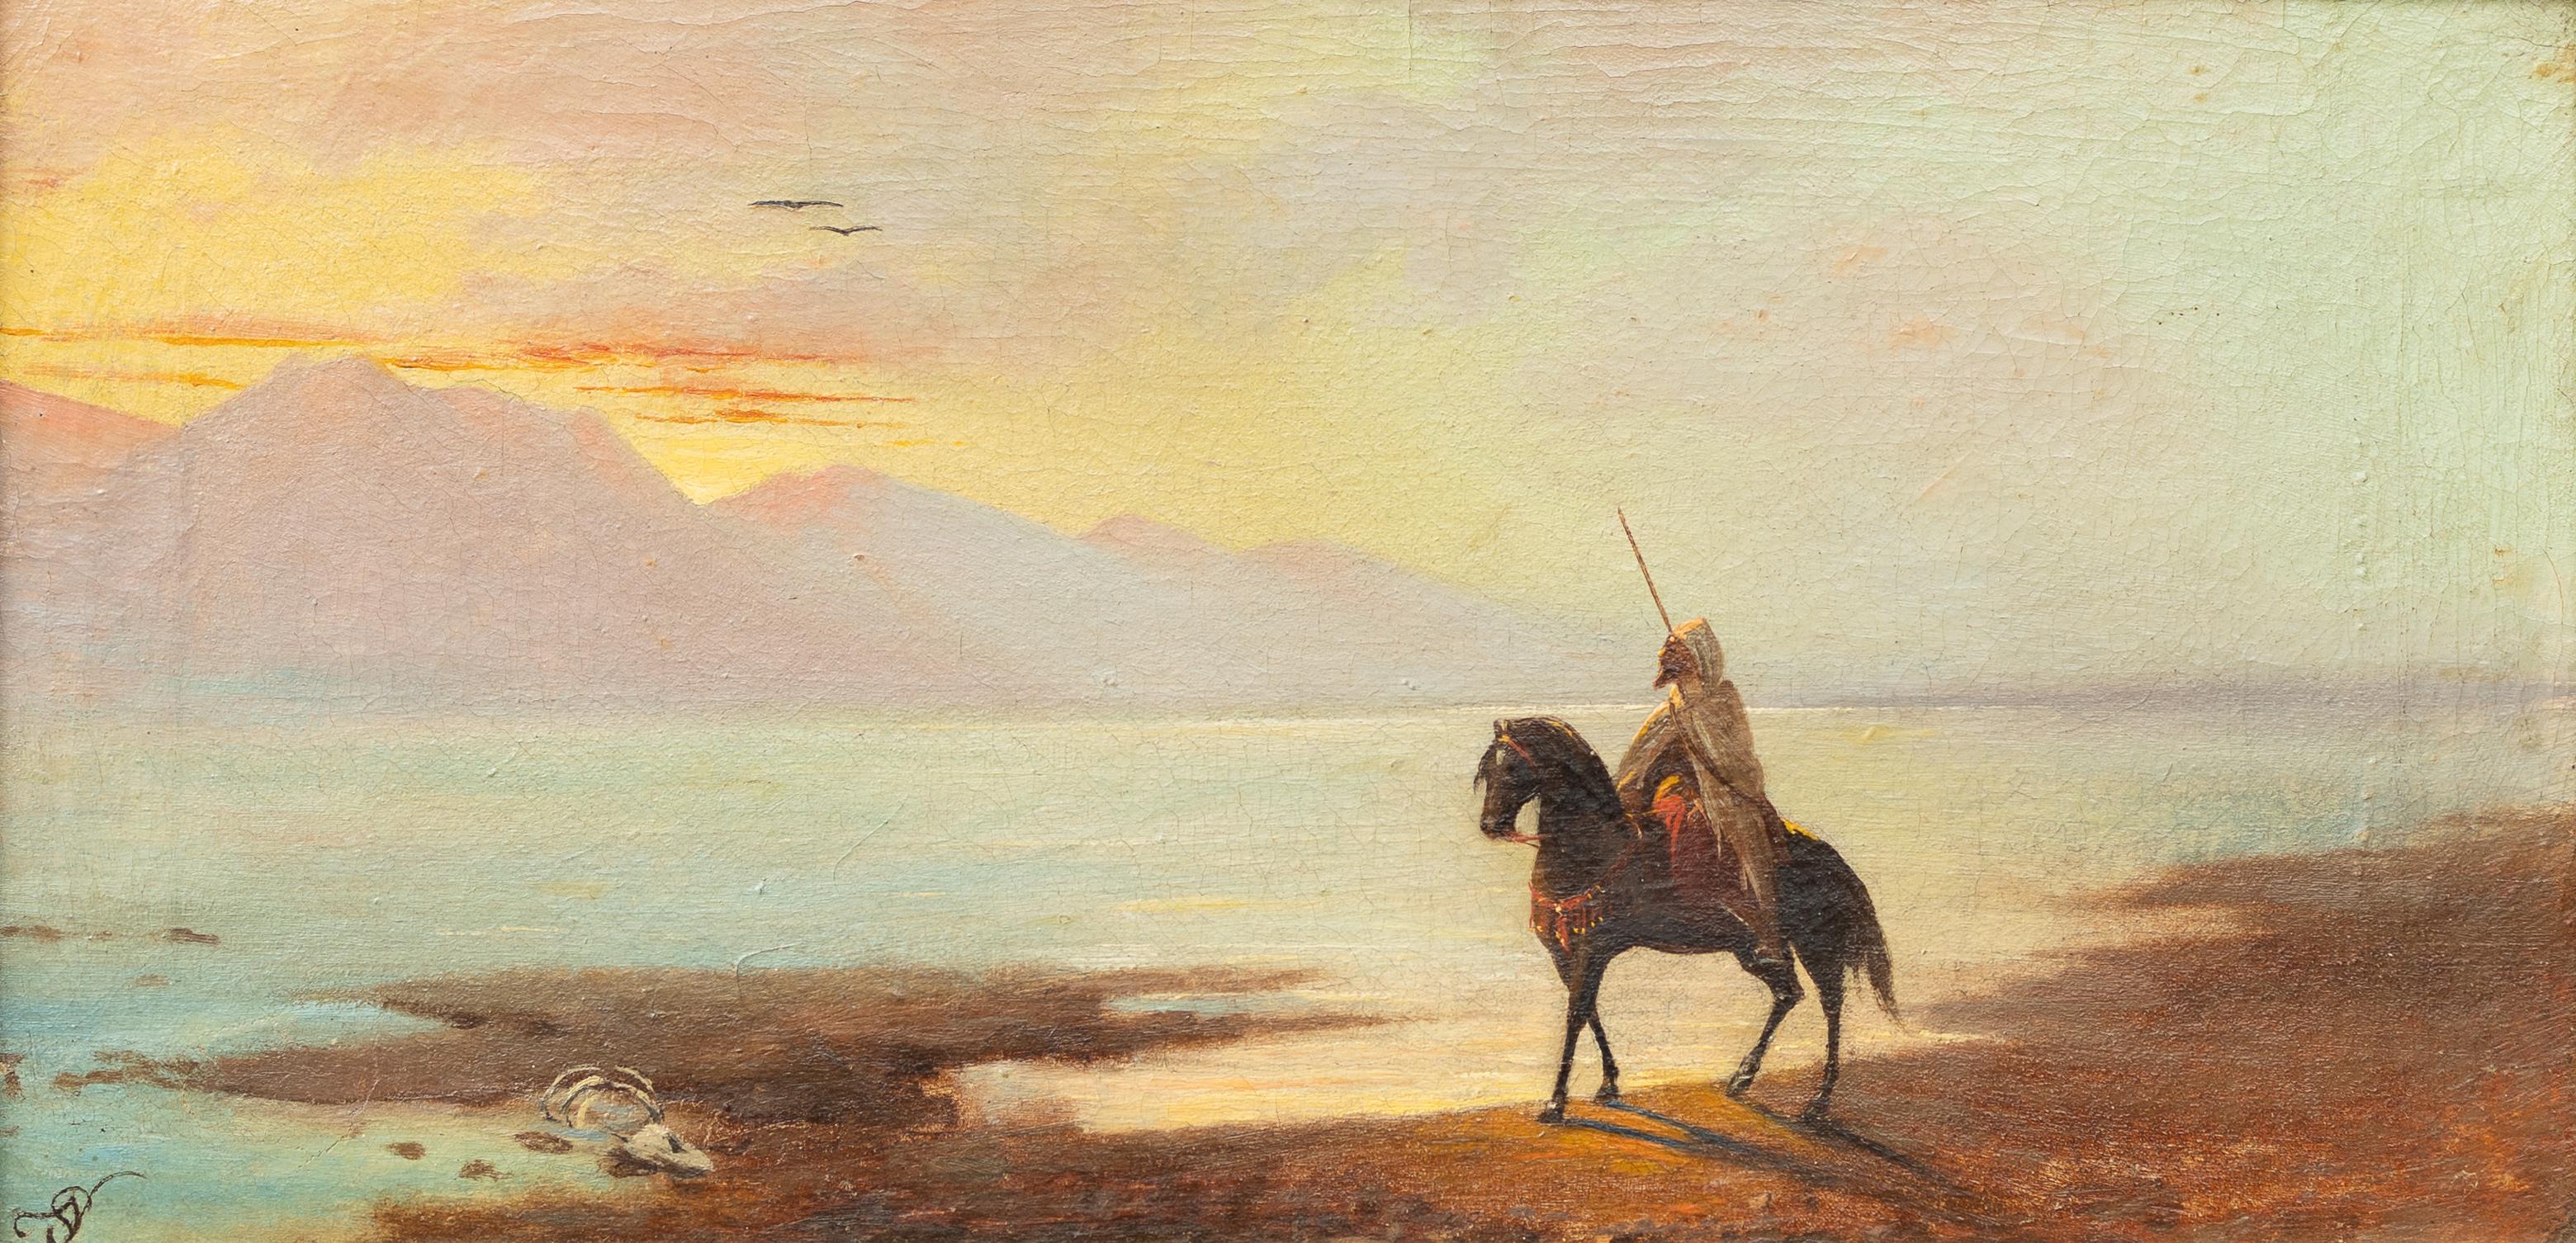 Landscape Painting Adolf Schreyer - Cavalier arabe au crépuscule